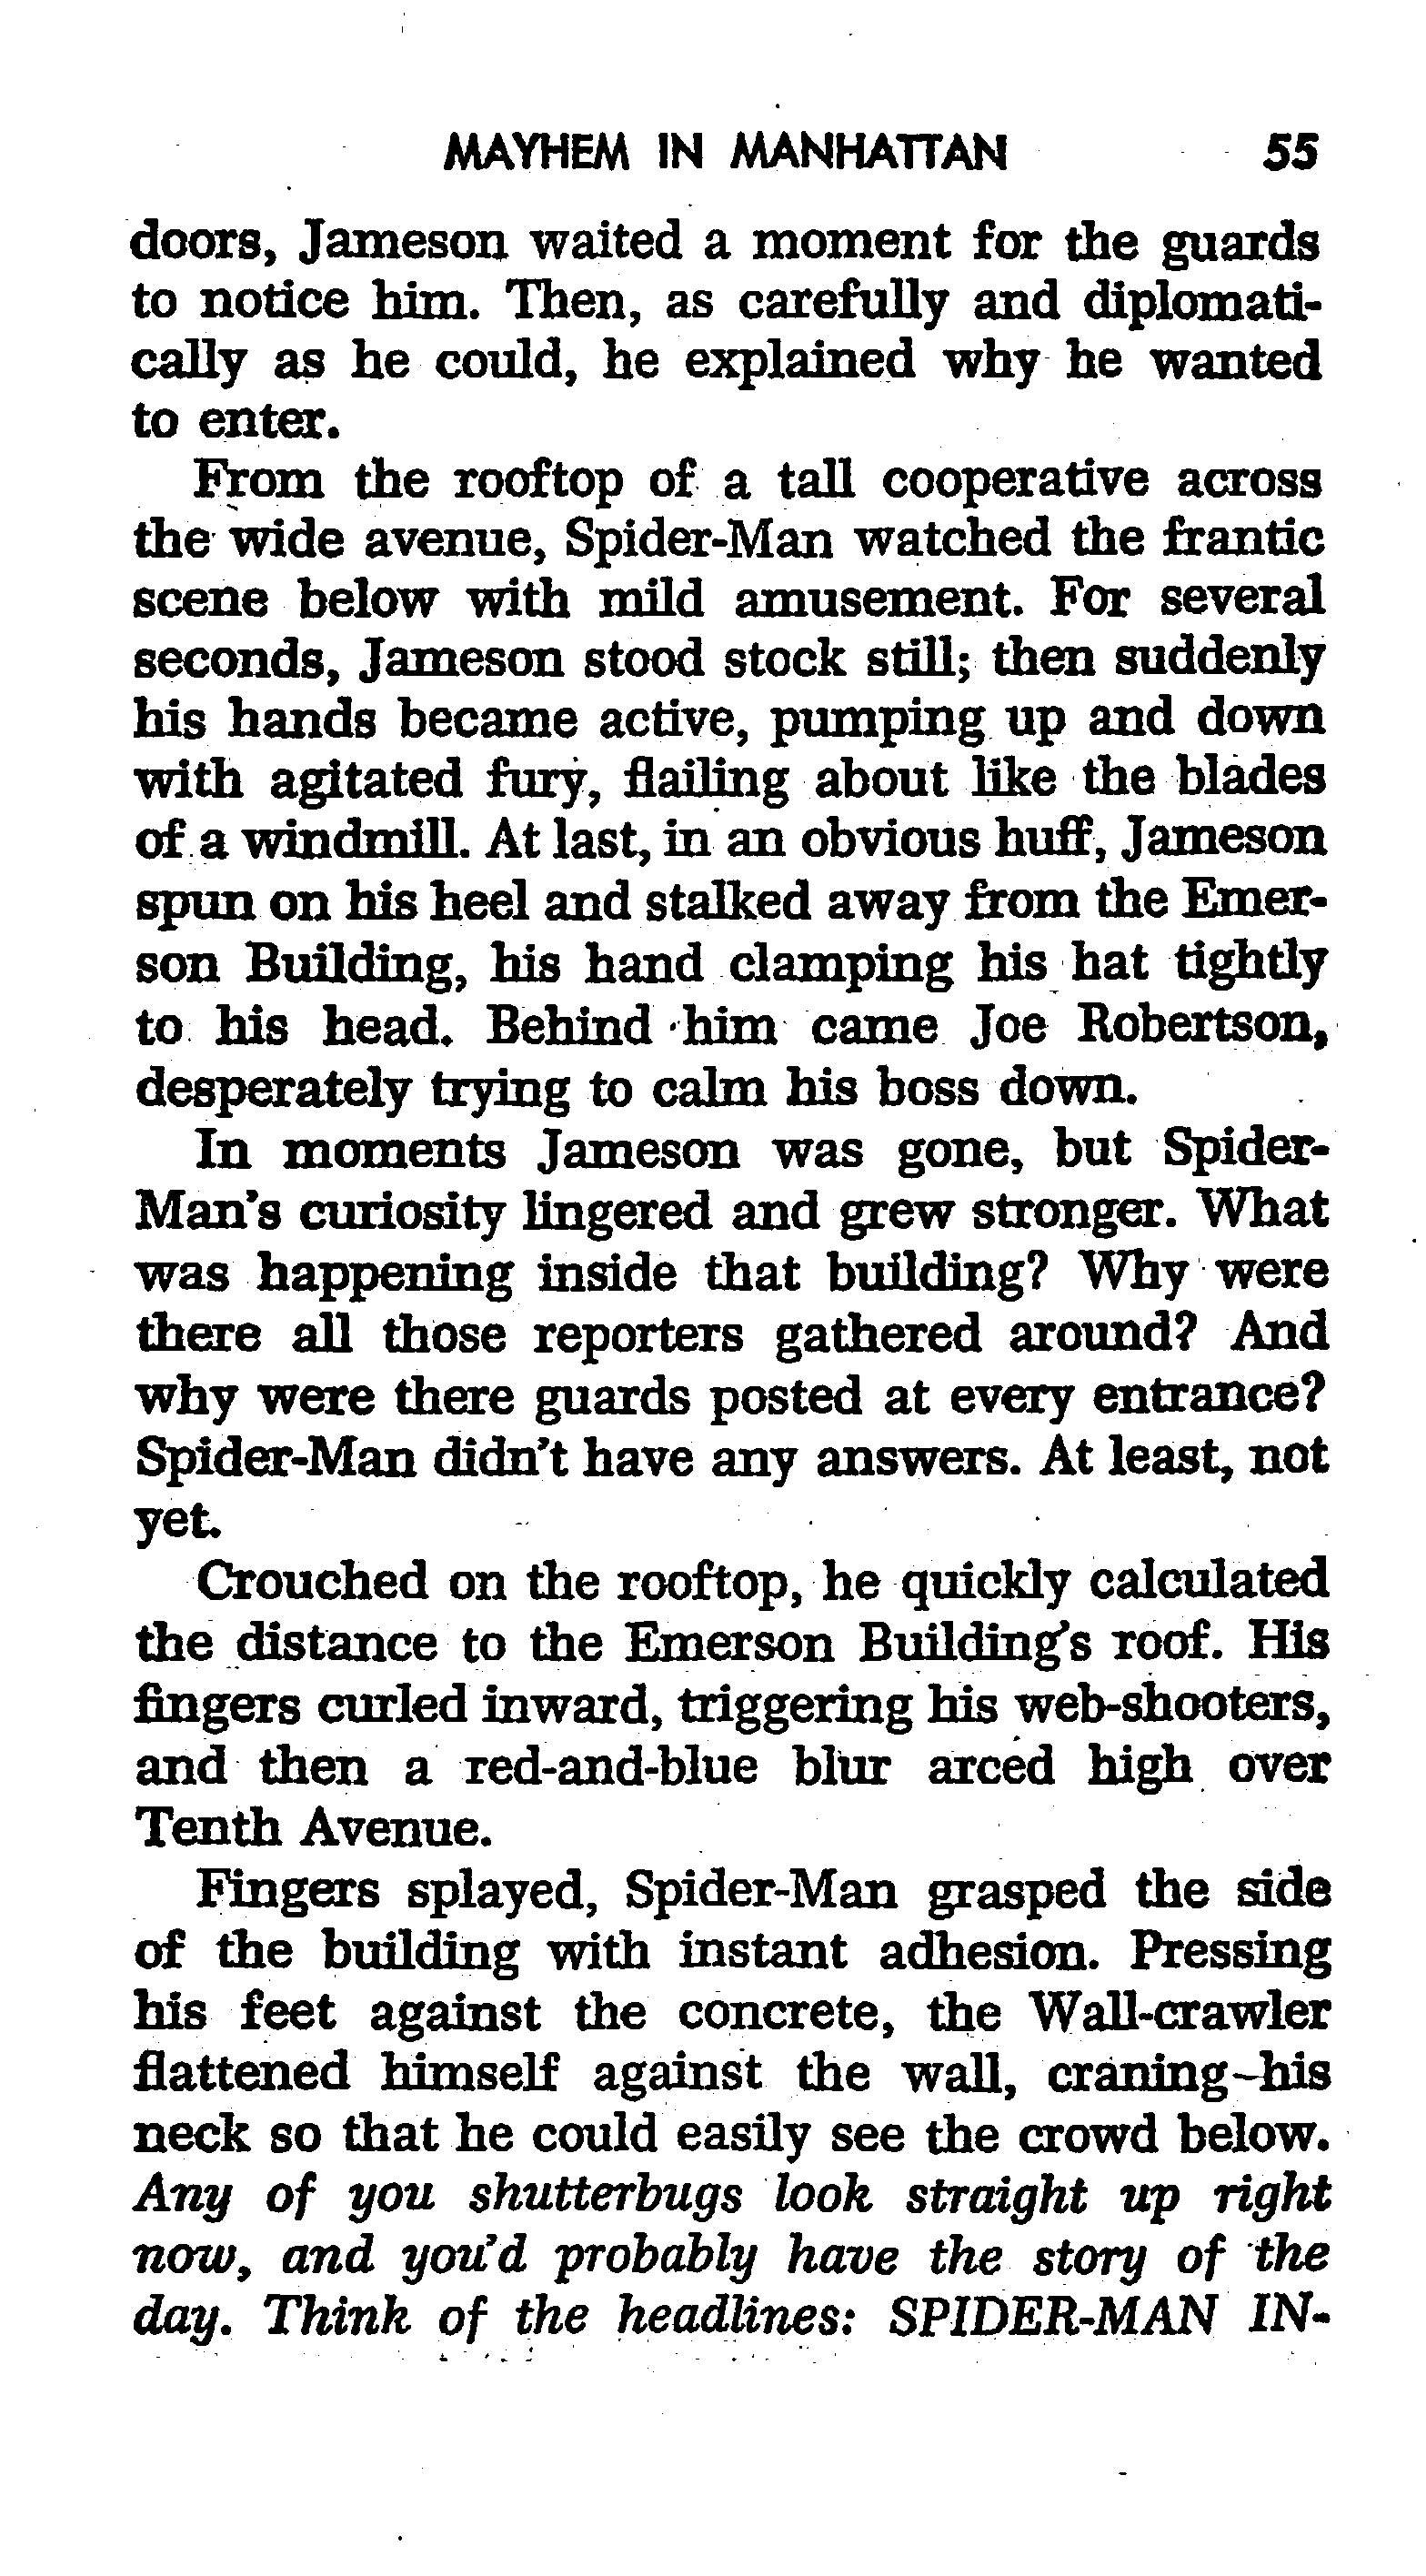 Read online The Amazing Spider-Man: Mayhem in Manhattan comic -  Issue # TPB (Part 1) - 56